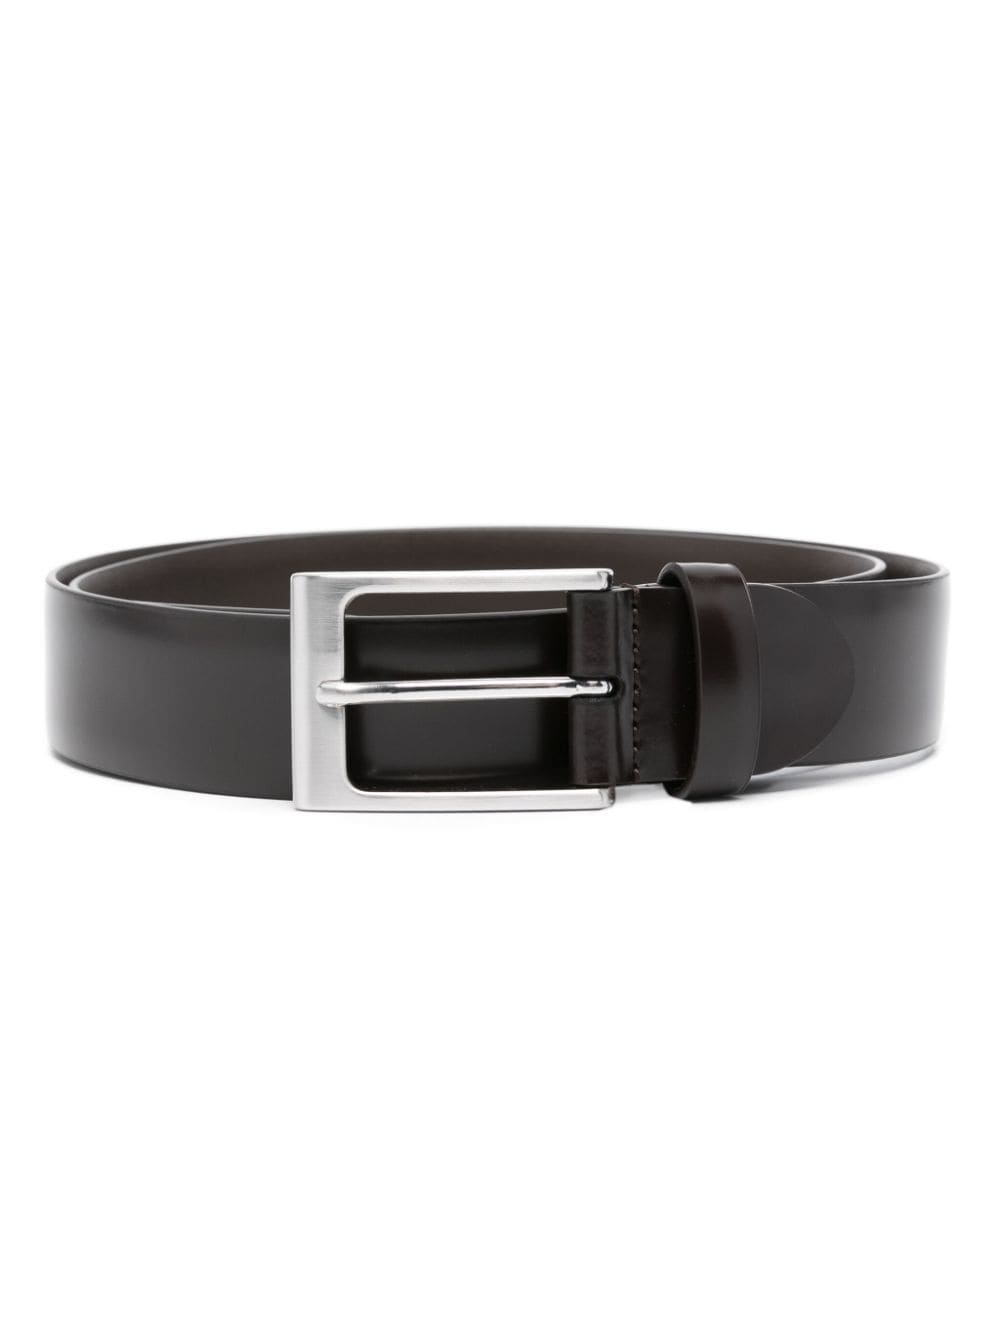 Canali buckled leather belt - Brown von Canali